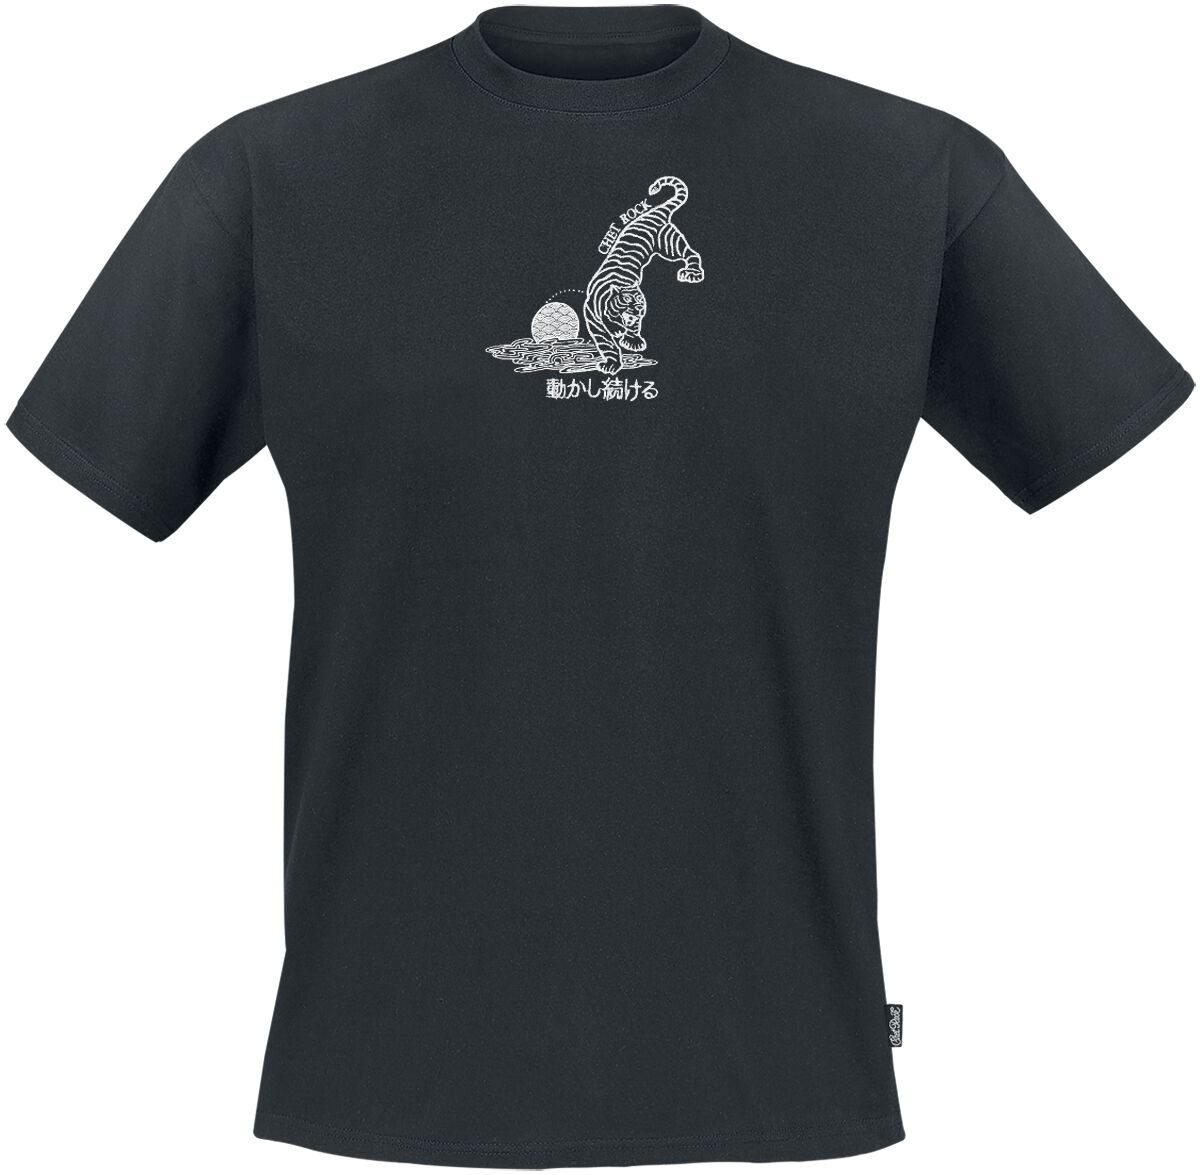 Chet Rock Crouching Tiger T-Shirt schwarz in XL von Chet Rock